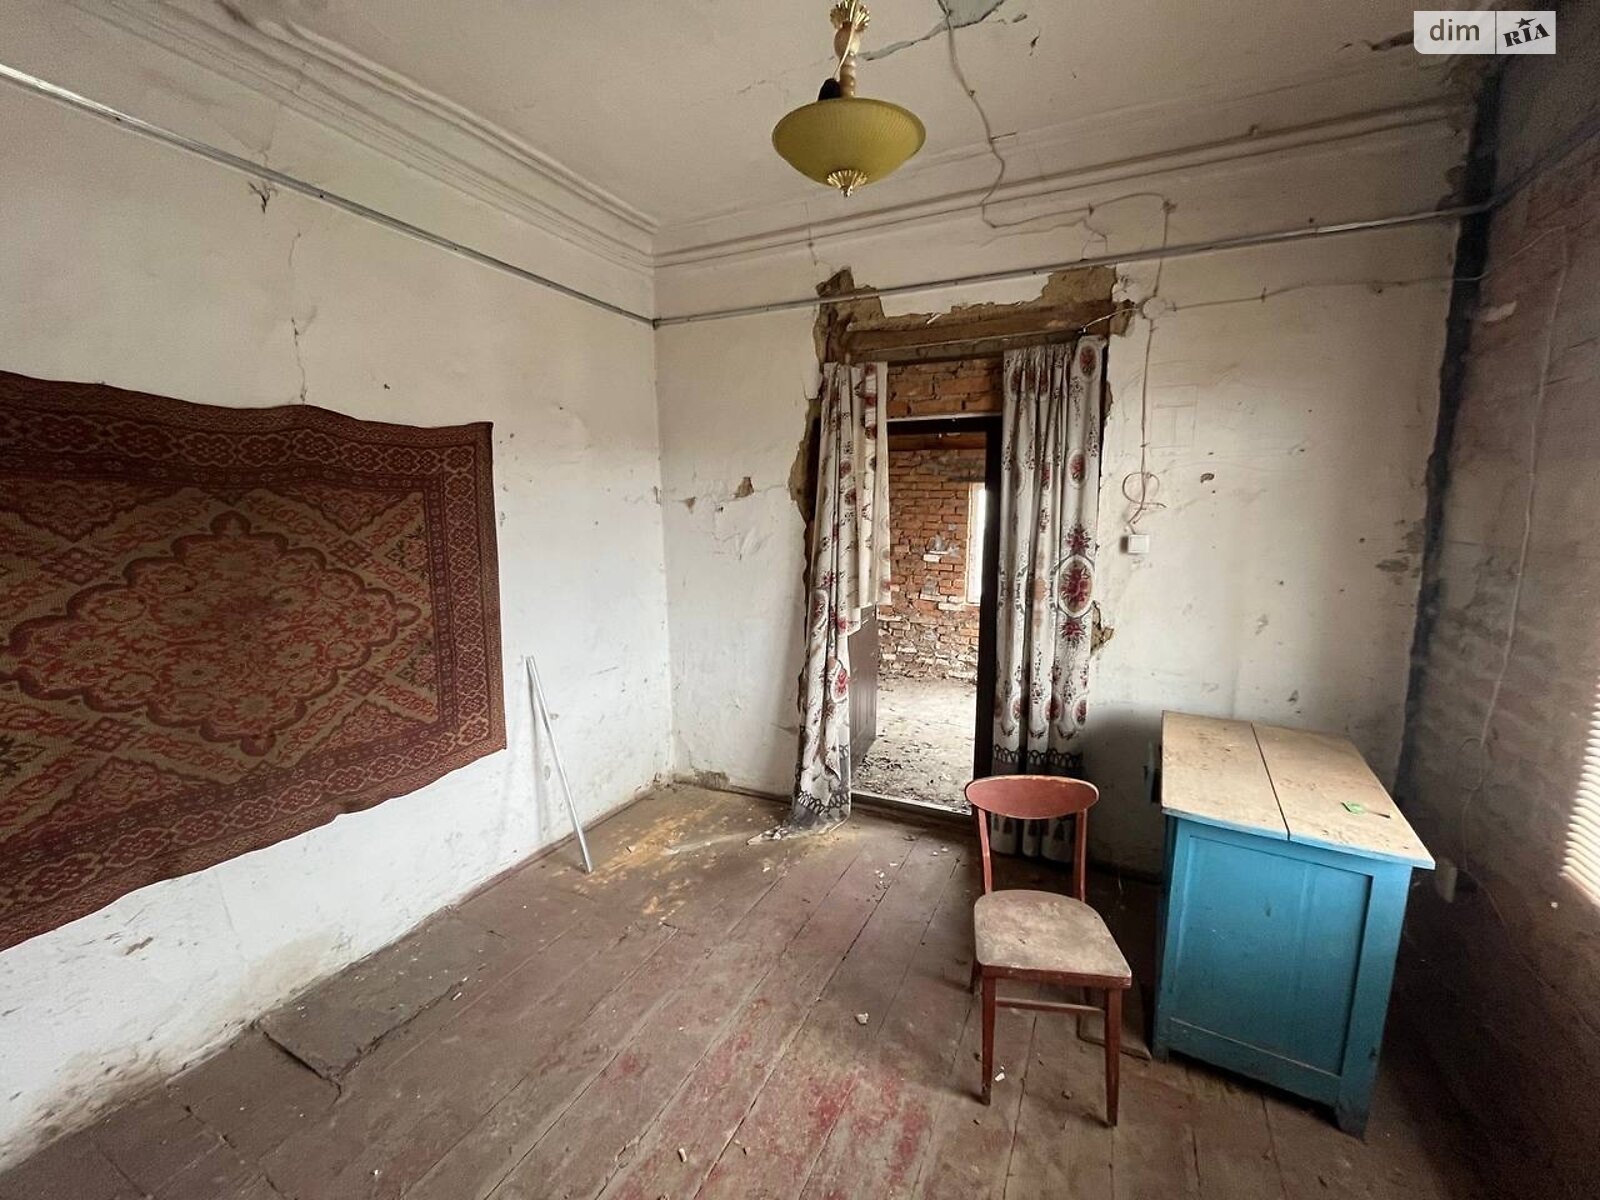 Продажа части дома в Тараще, улица Софиевская (Ленина), 2 комнаты фото 1